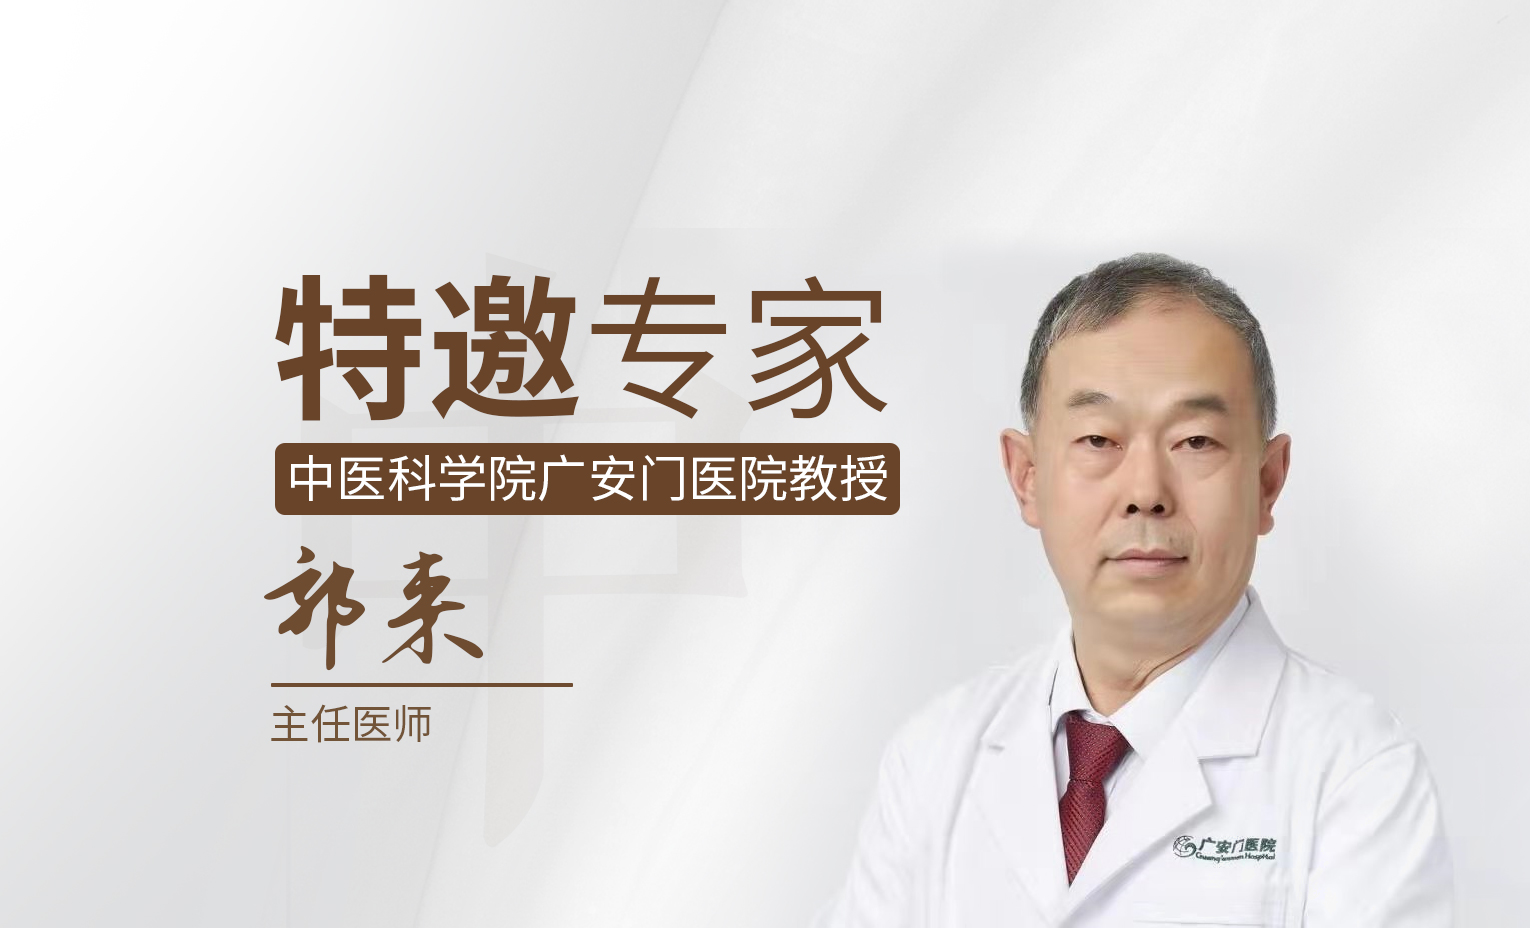 包含中国中医科学院广安门医院科室排名代挂陪诊就医的词条